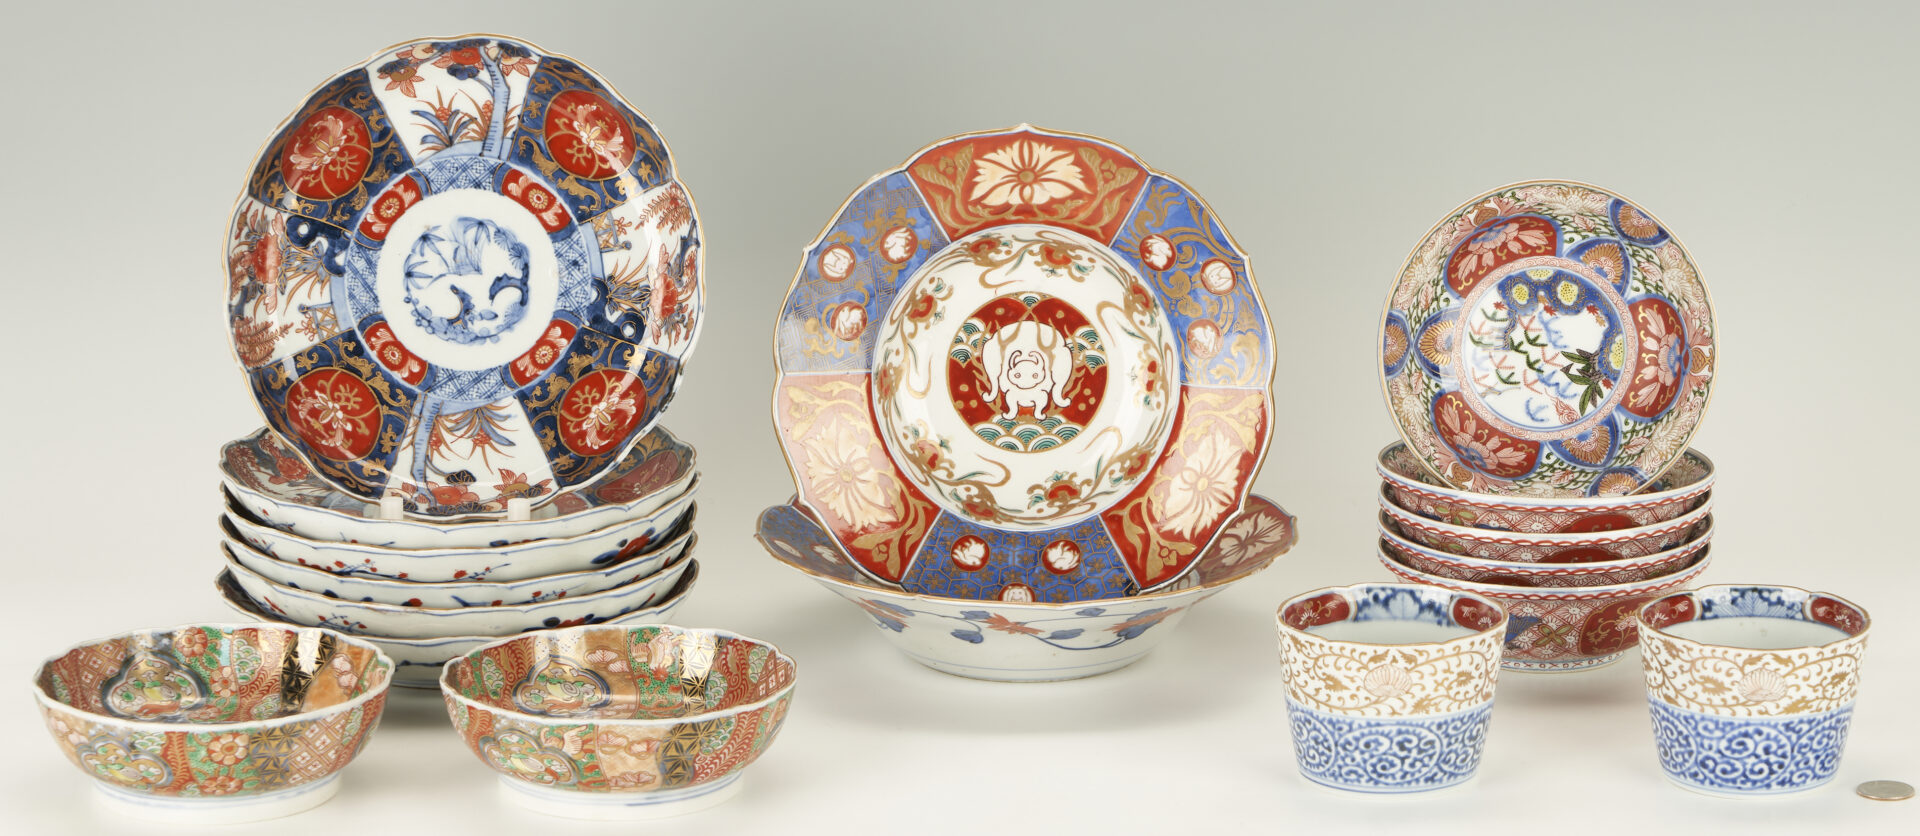 Lot 403: 17 Assorted Imari Porcelain Dinnerware Items